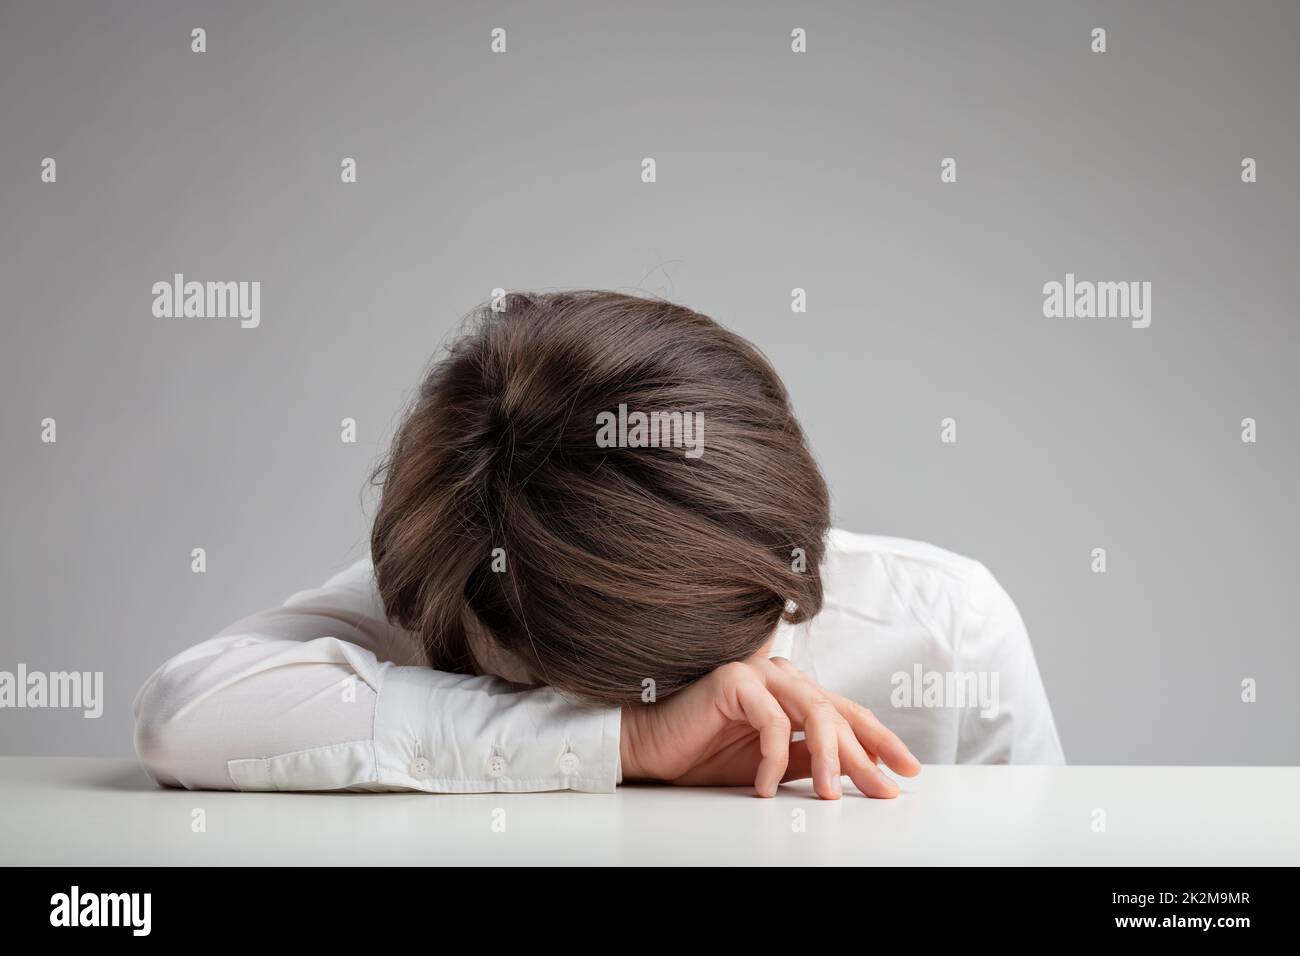 Femme fatiguée, épuisée ou dépressive Banque D'Images